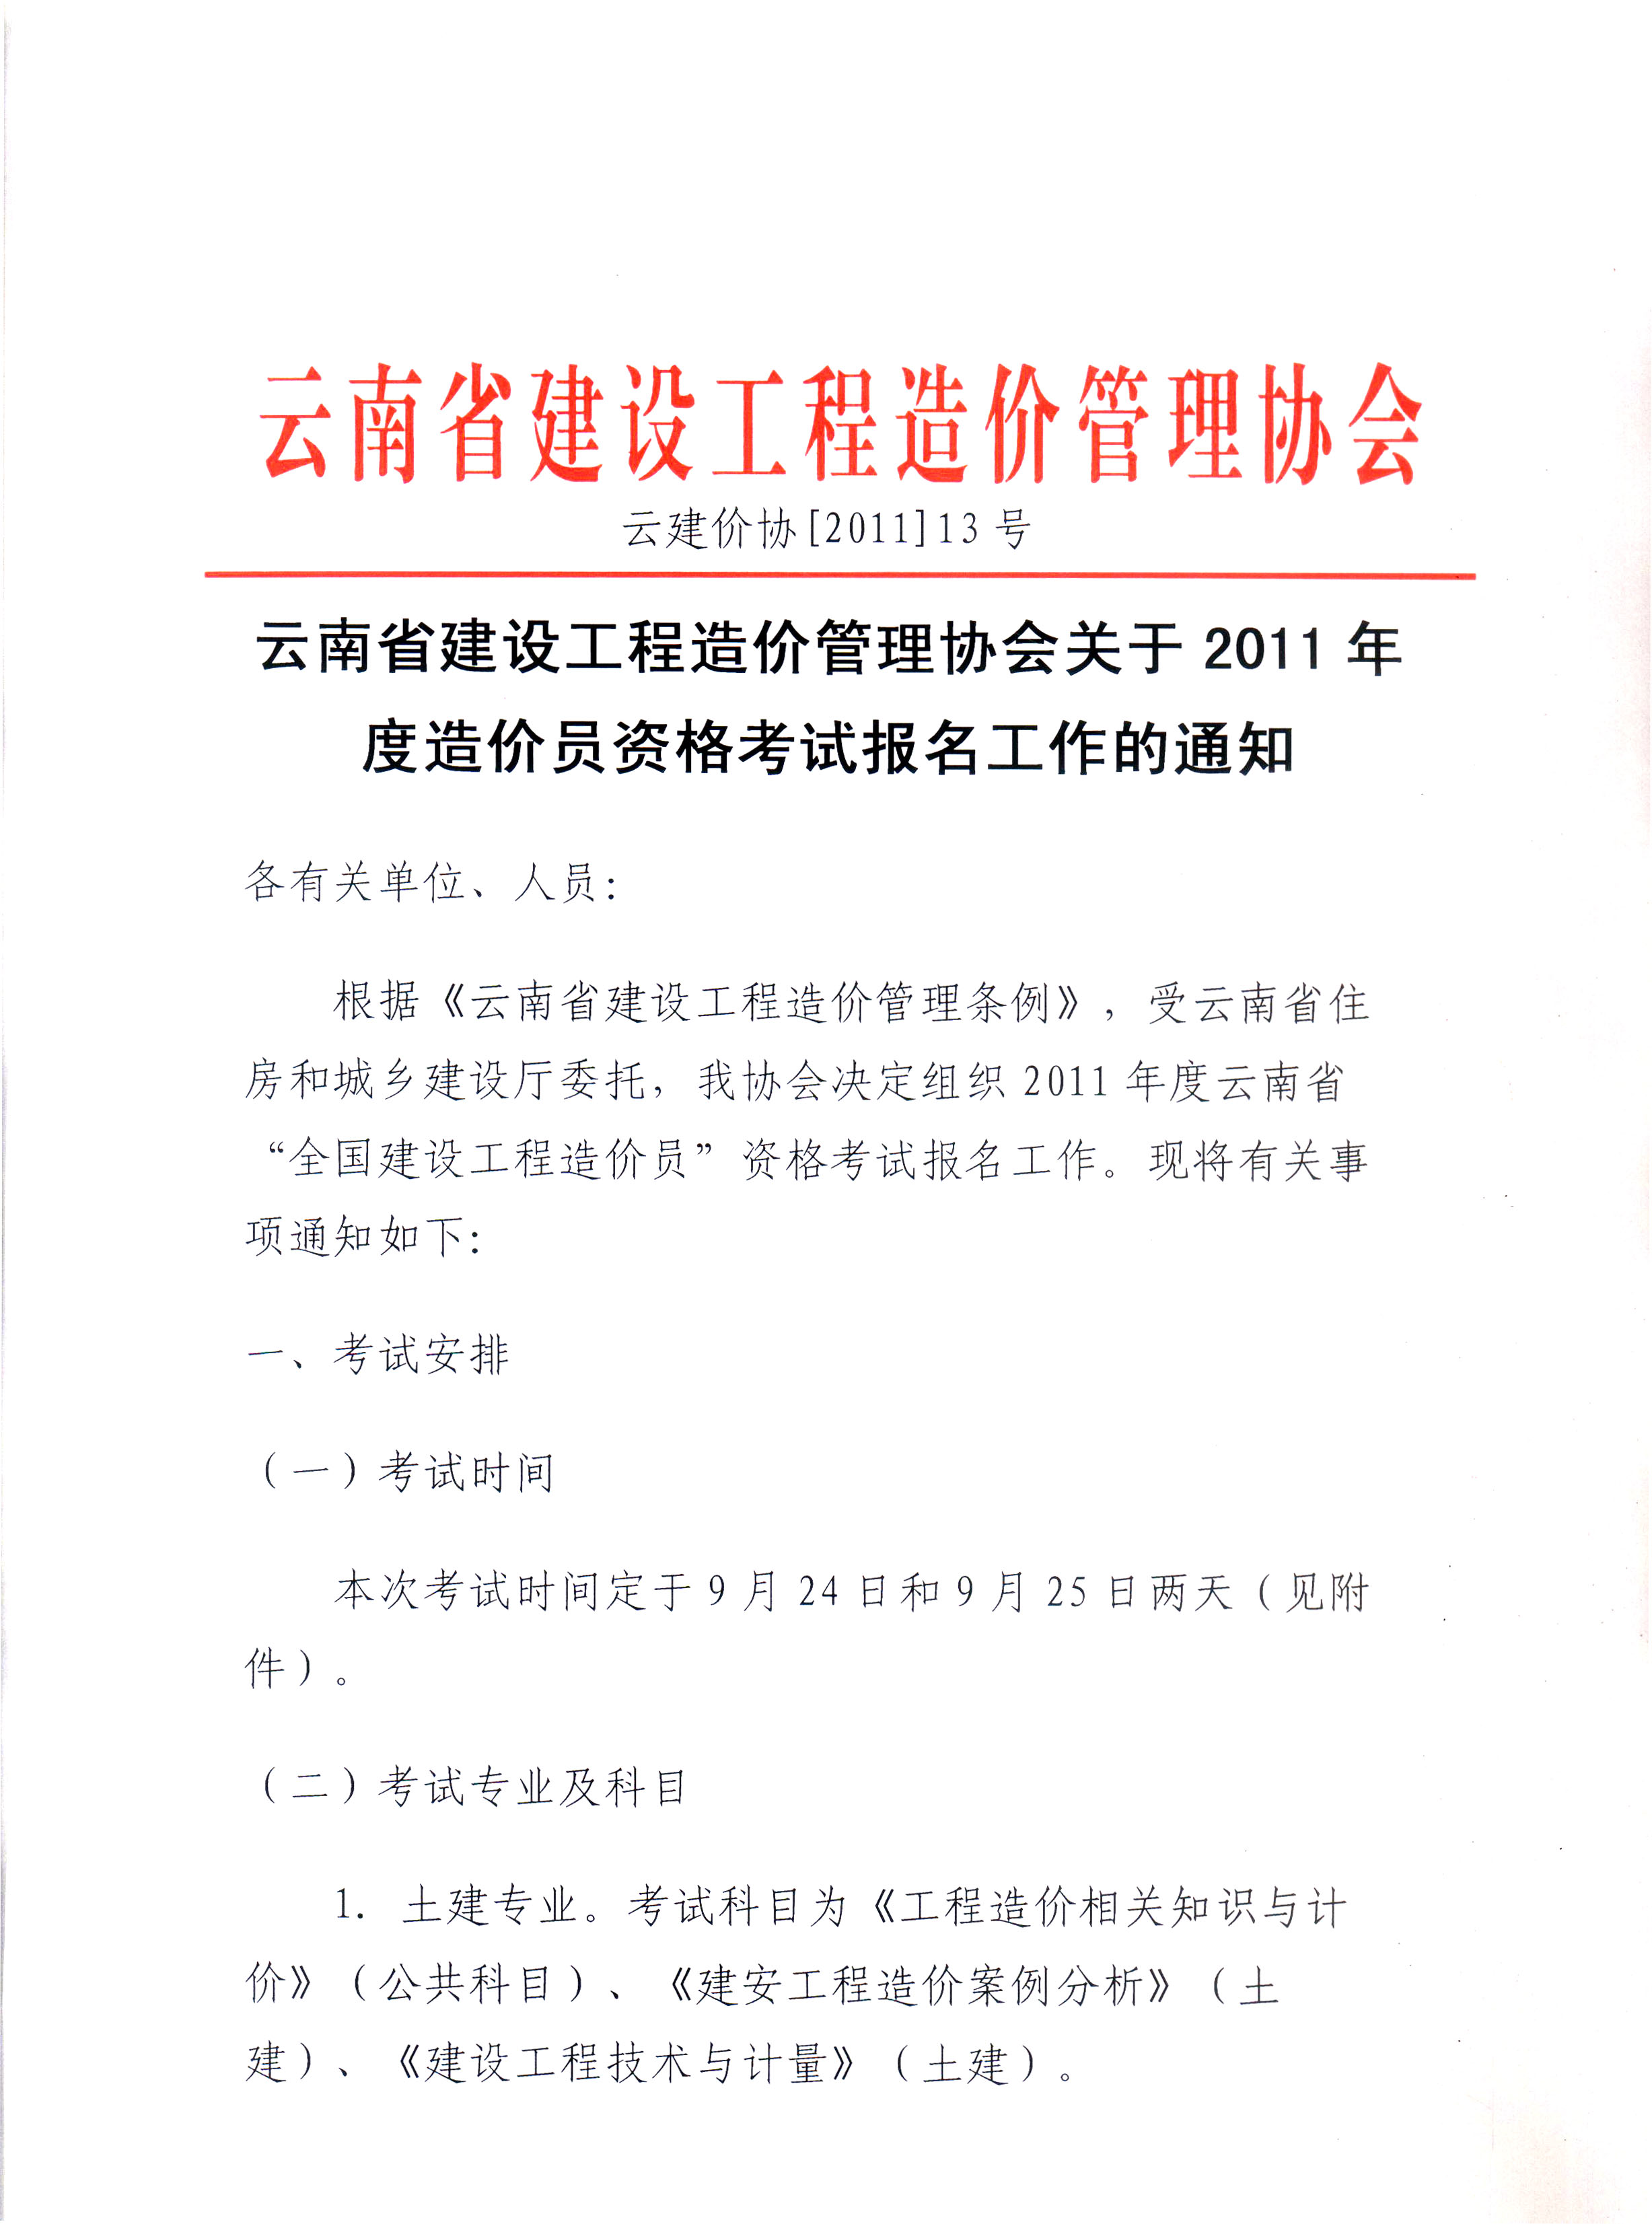 云南省建设工程造价管理协会关于2011年度造价员资格考试报名工作安排的通知